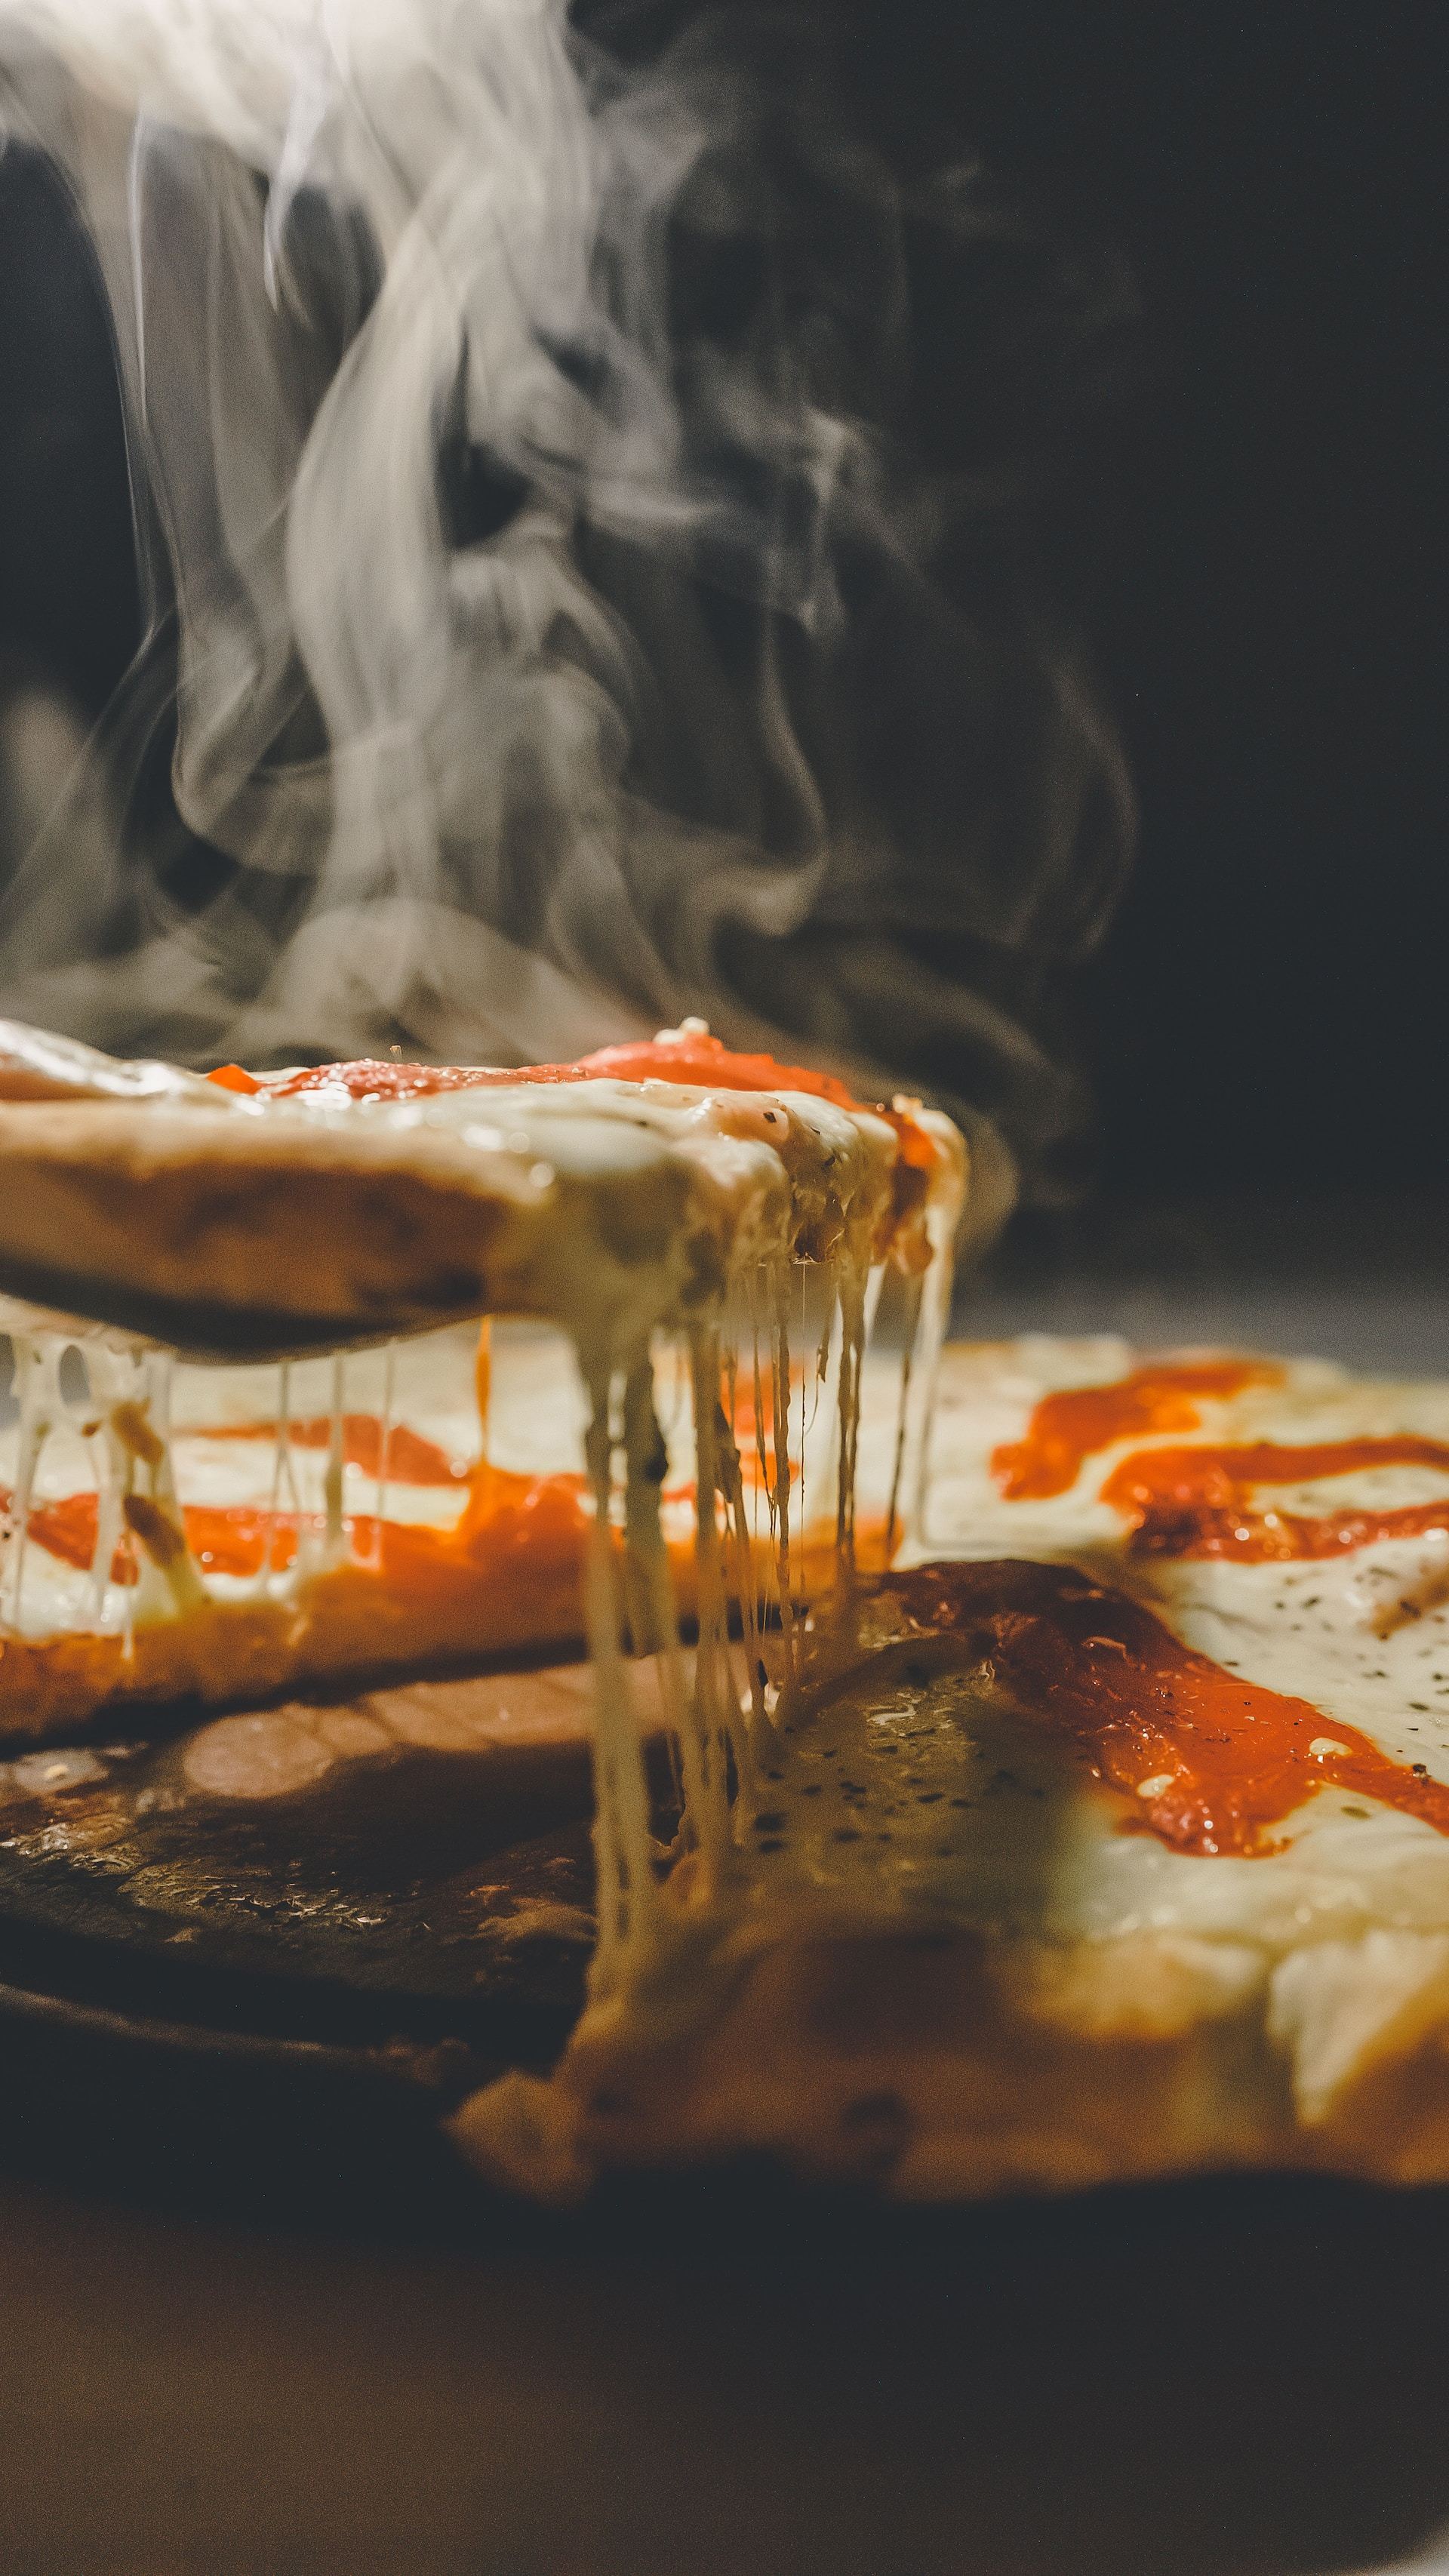 El debate definitivo: ¿qué pizza es la mejor?